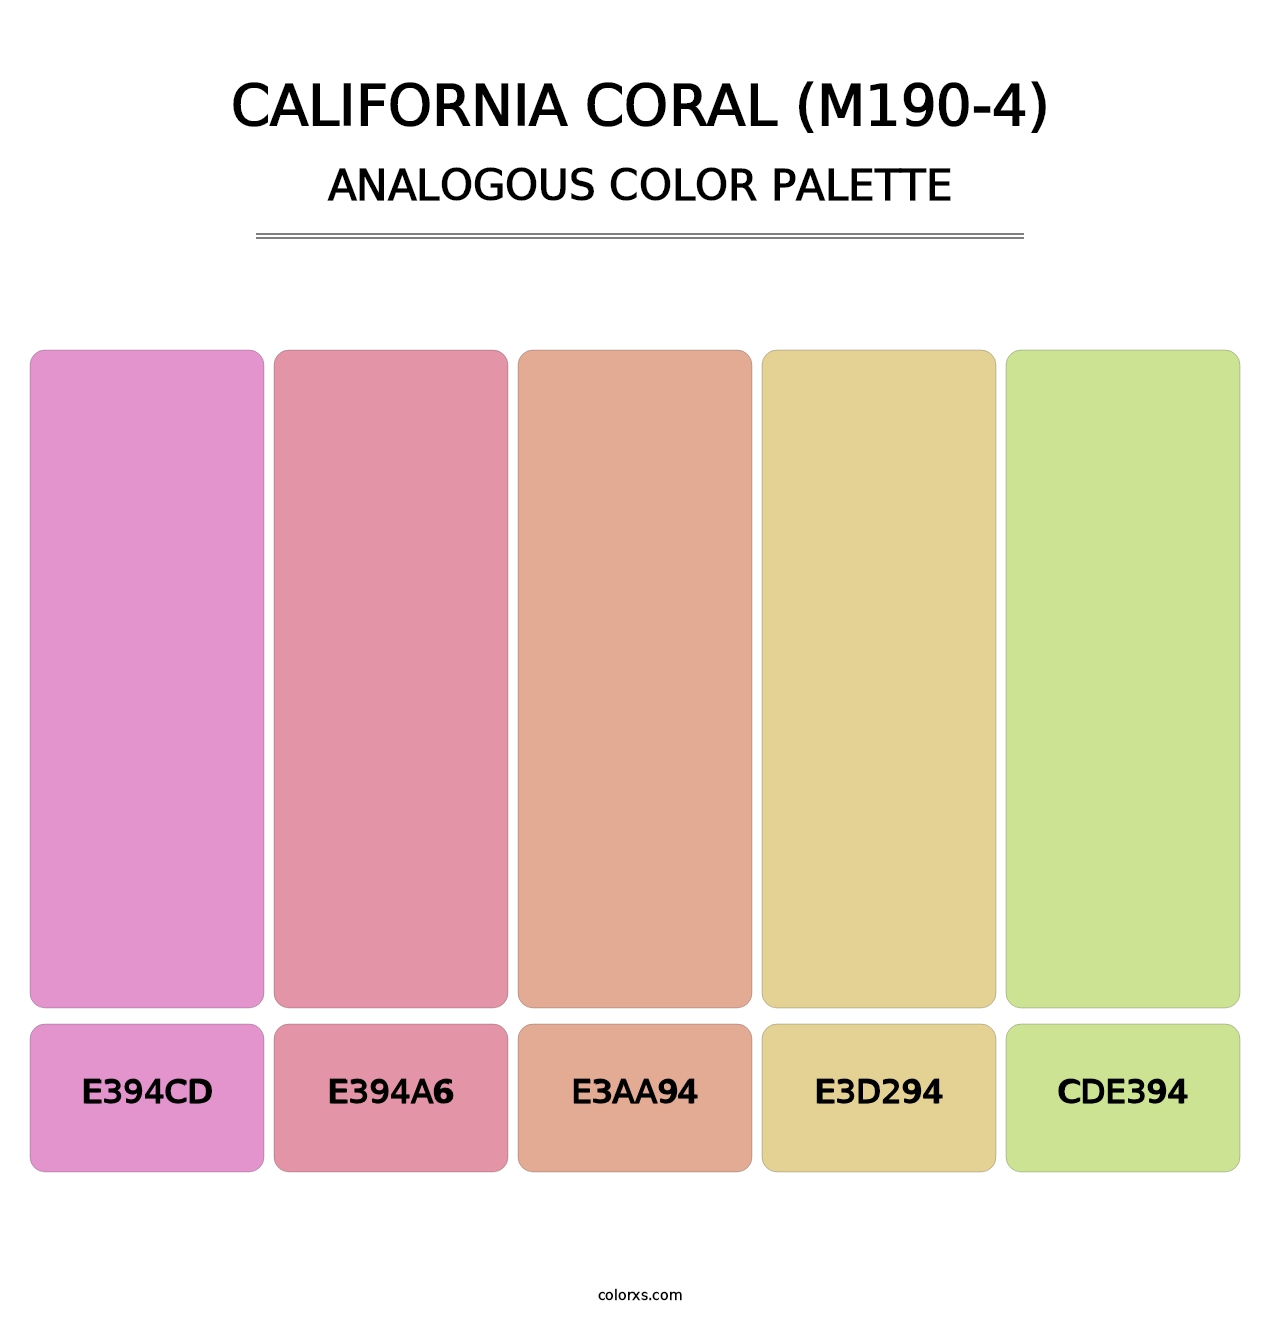 California Coral (M190-4) - Analogous Color Palette